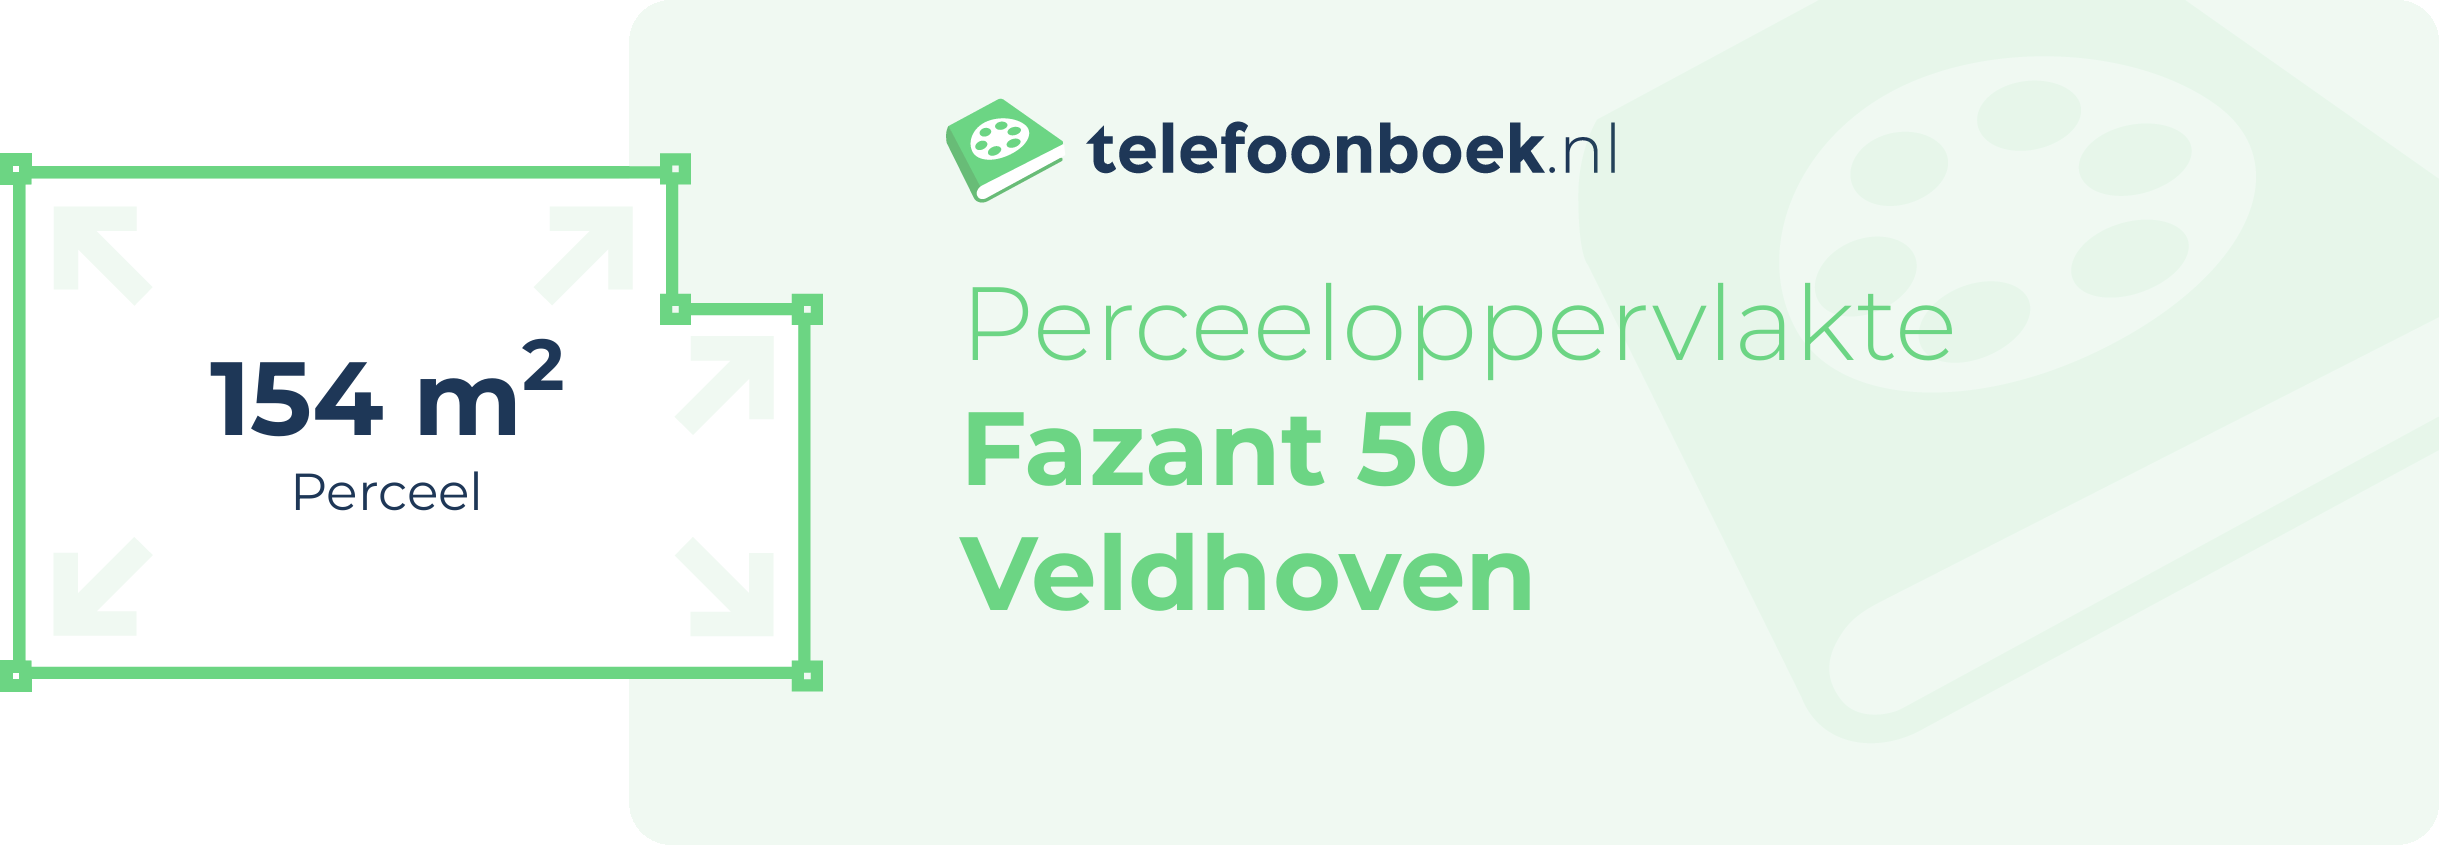 Perceeloppervlakte Fazant 50 Veldhoven